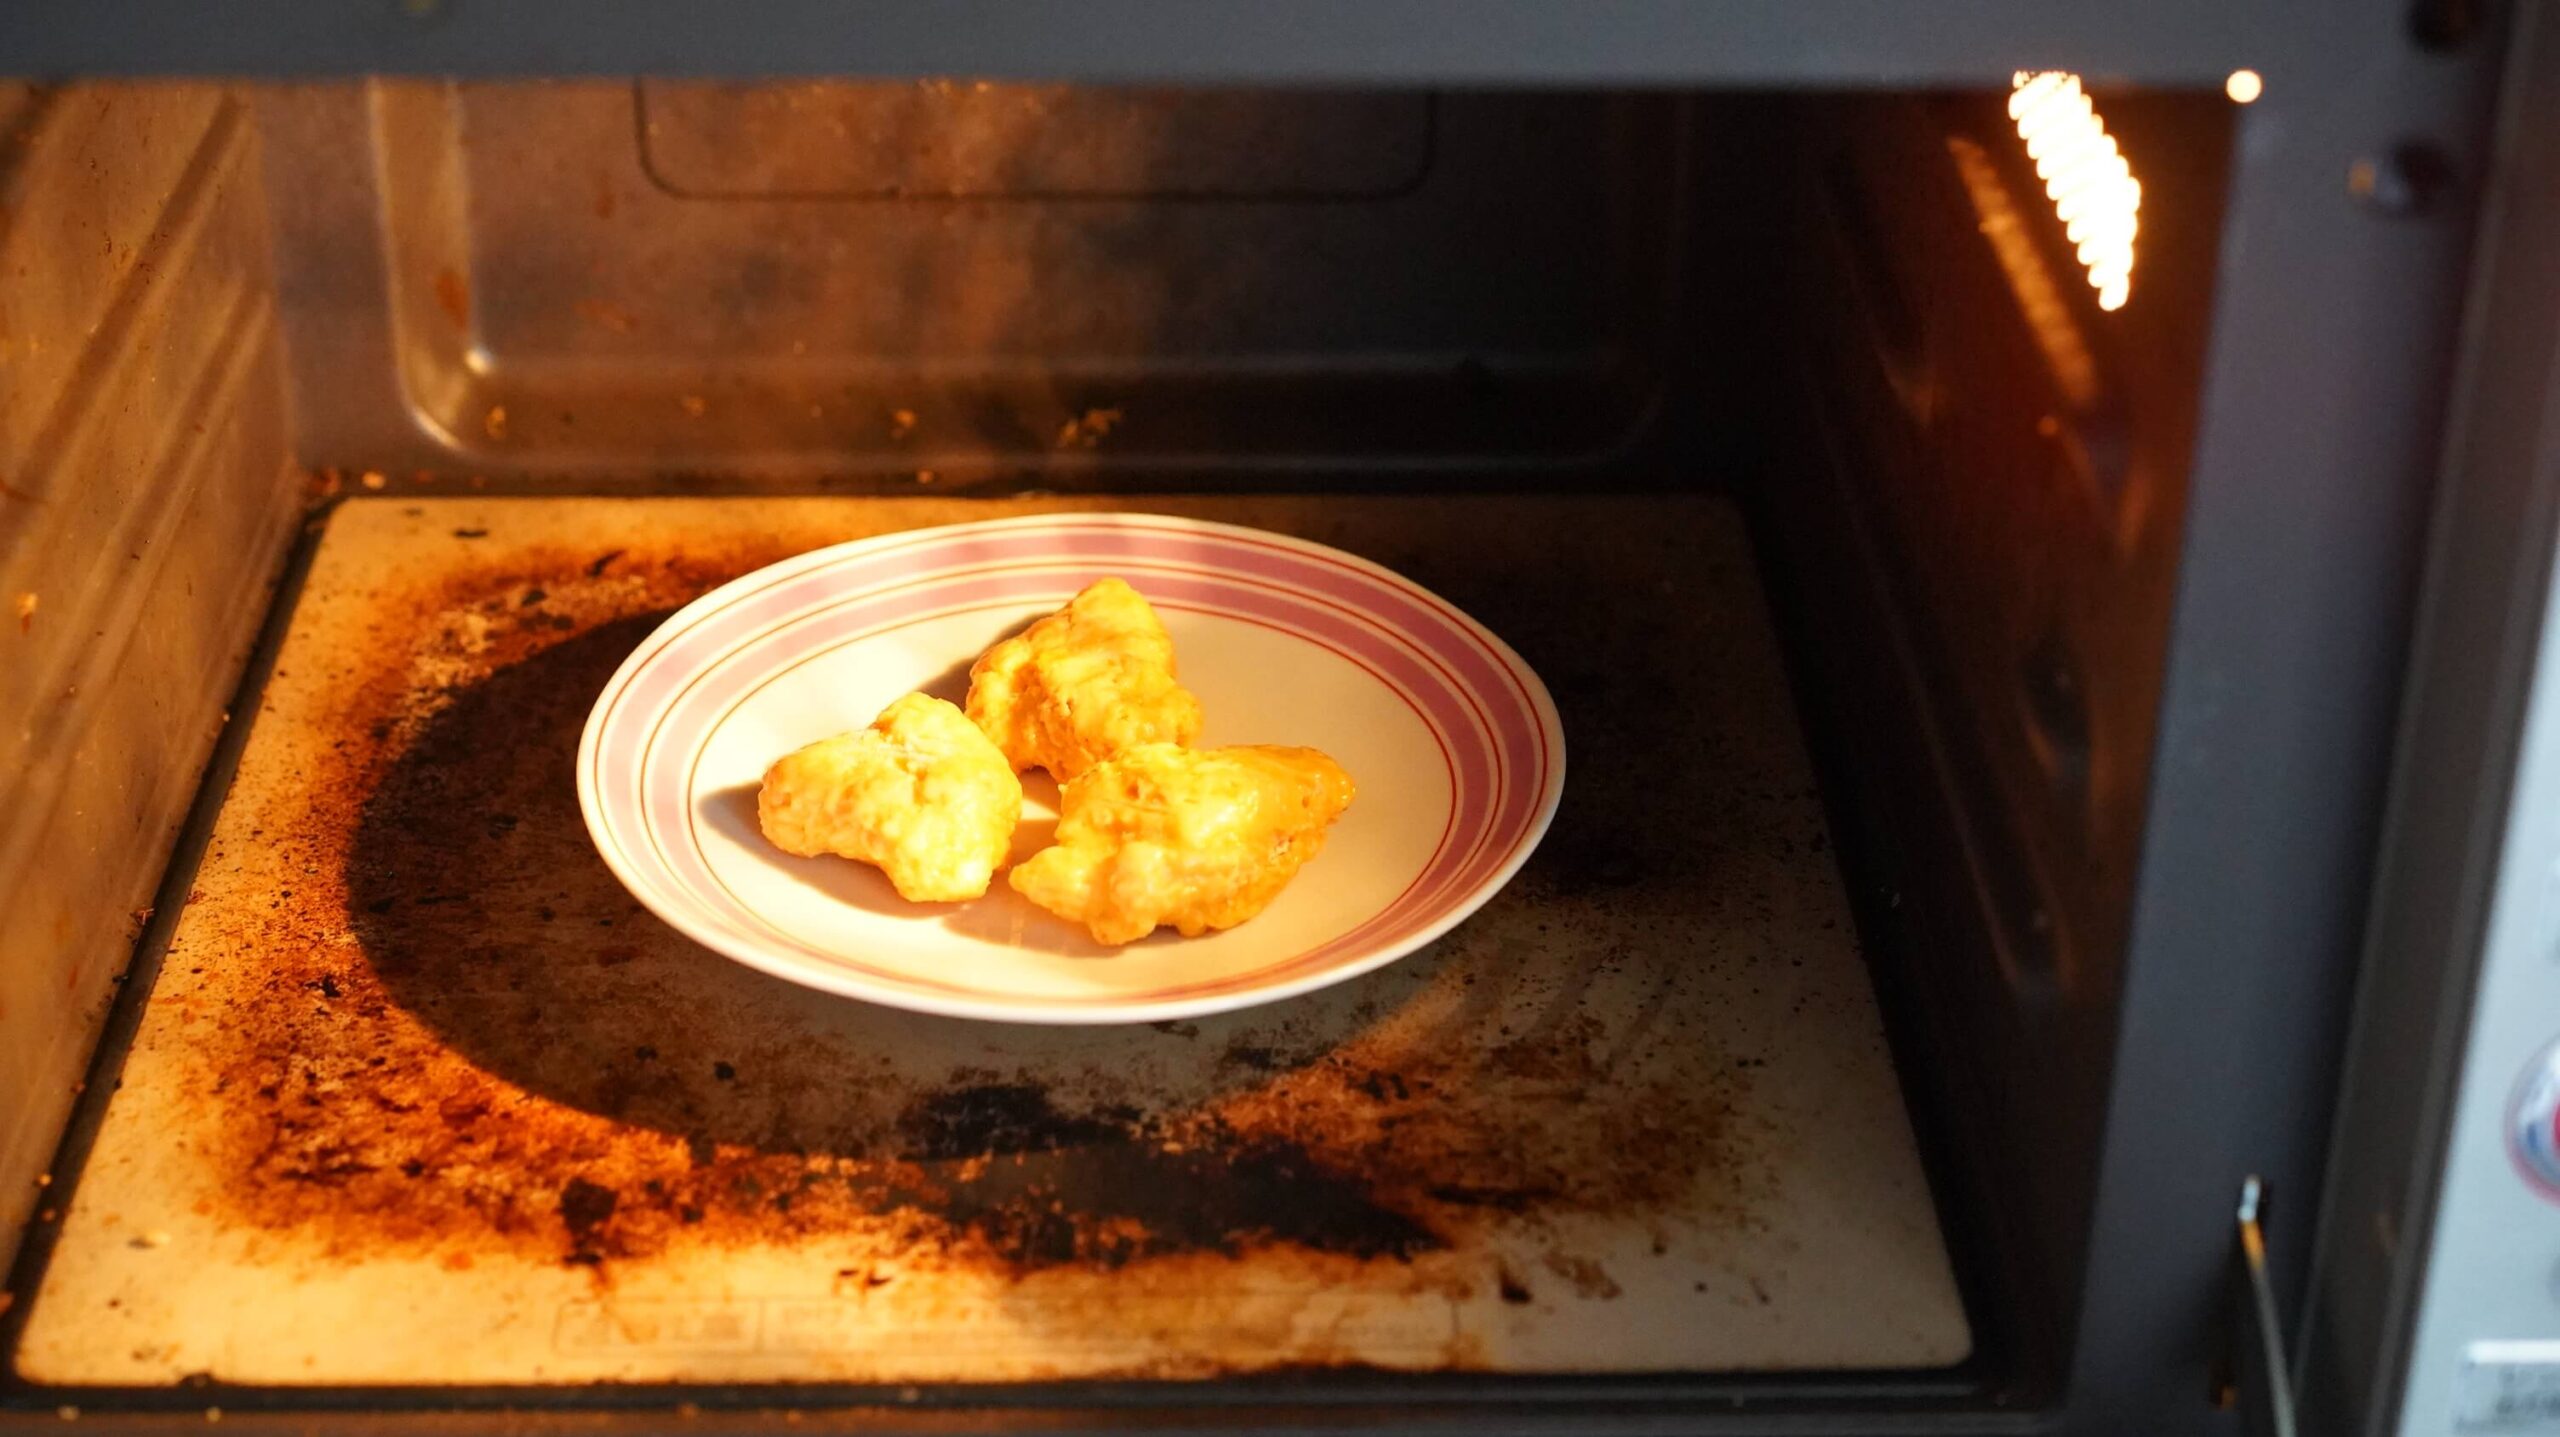 ニチレイの冷凍食品「ハニーマスタードチキン」を電子レンジで加熱している写真